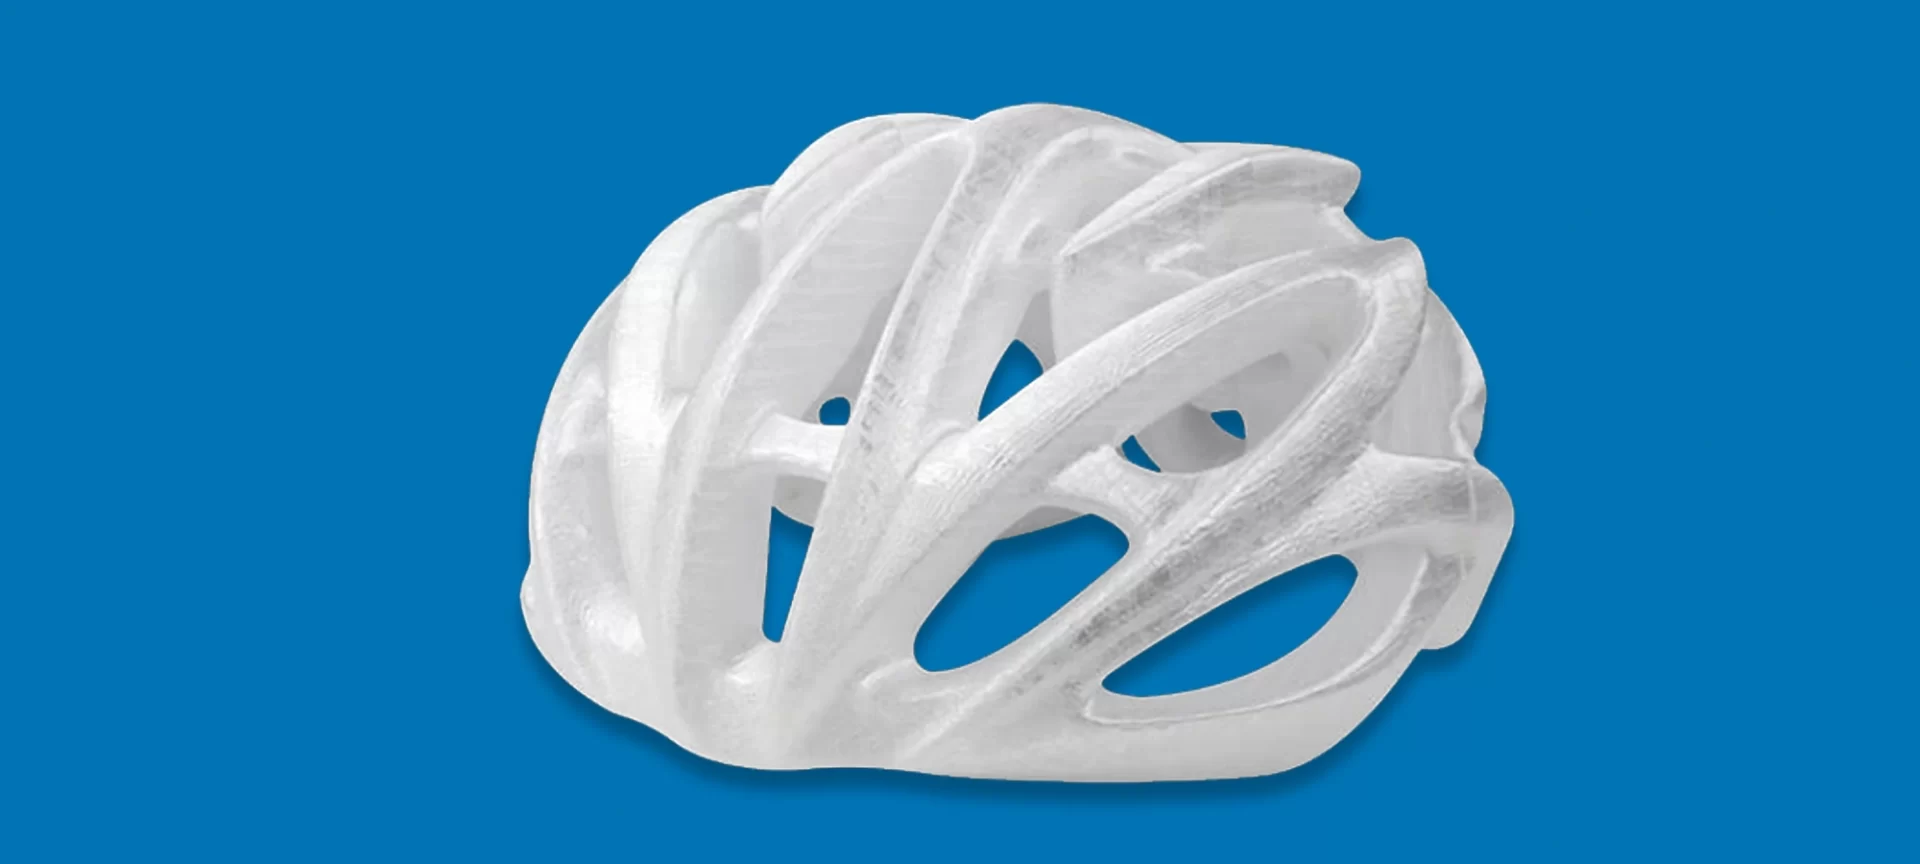 3D printed helmet